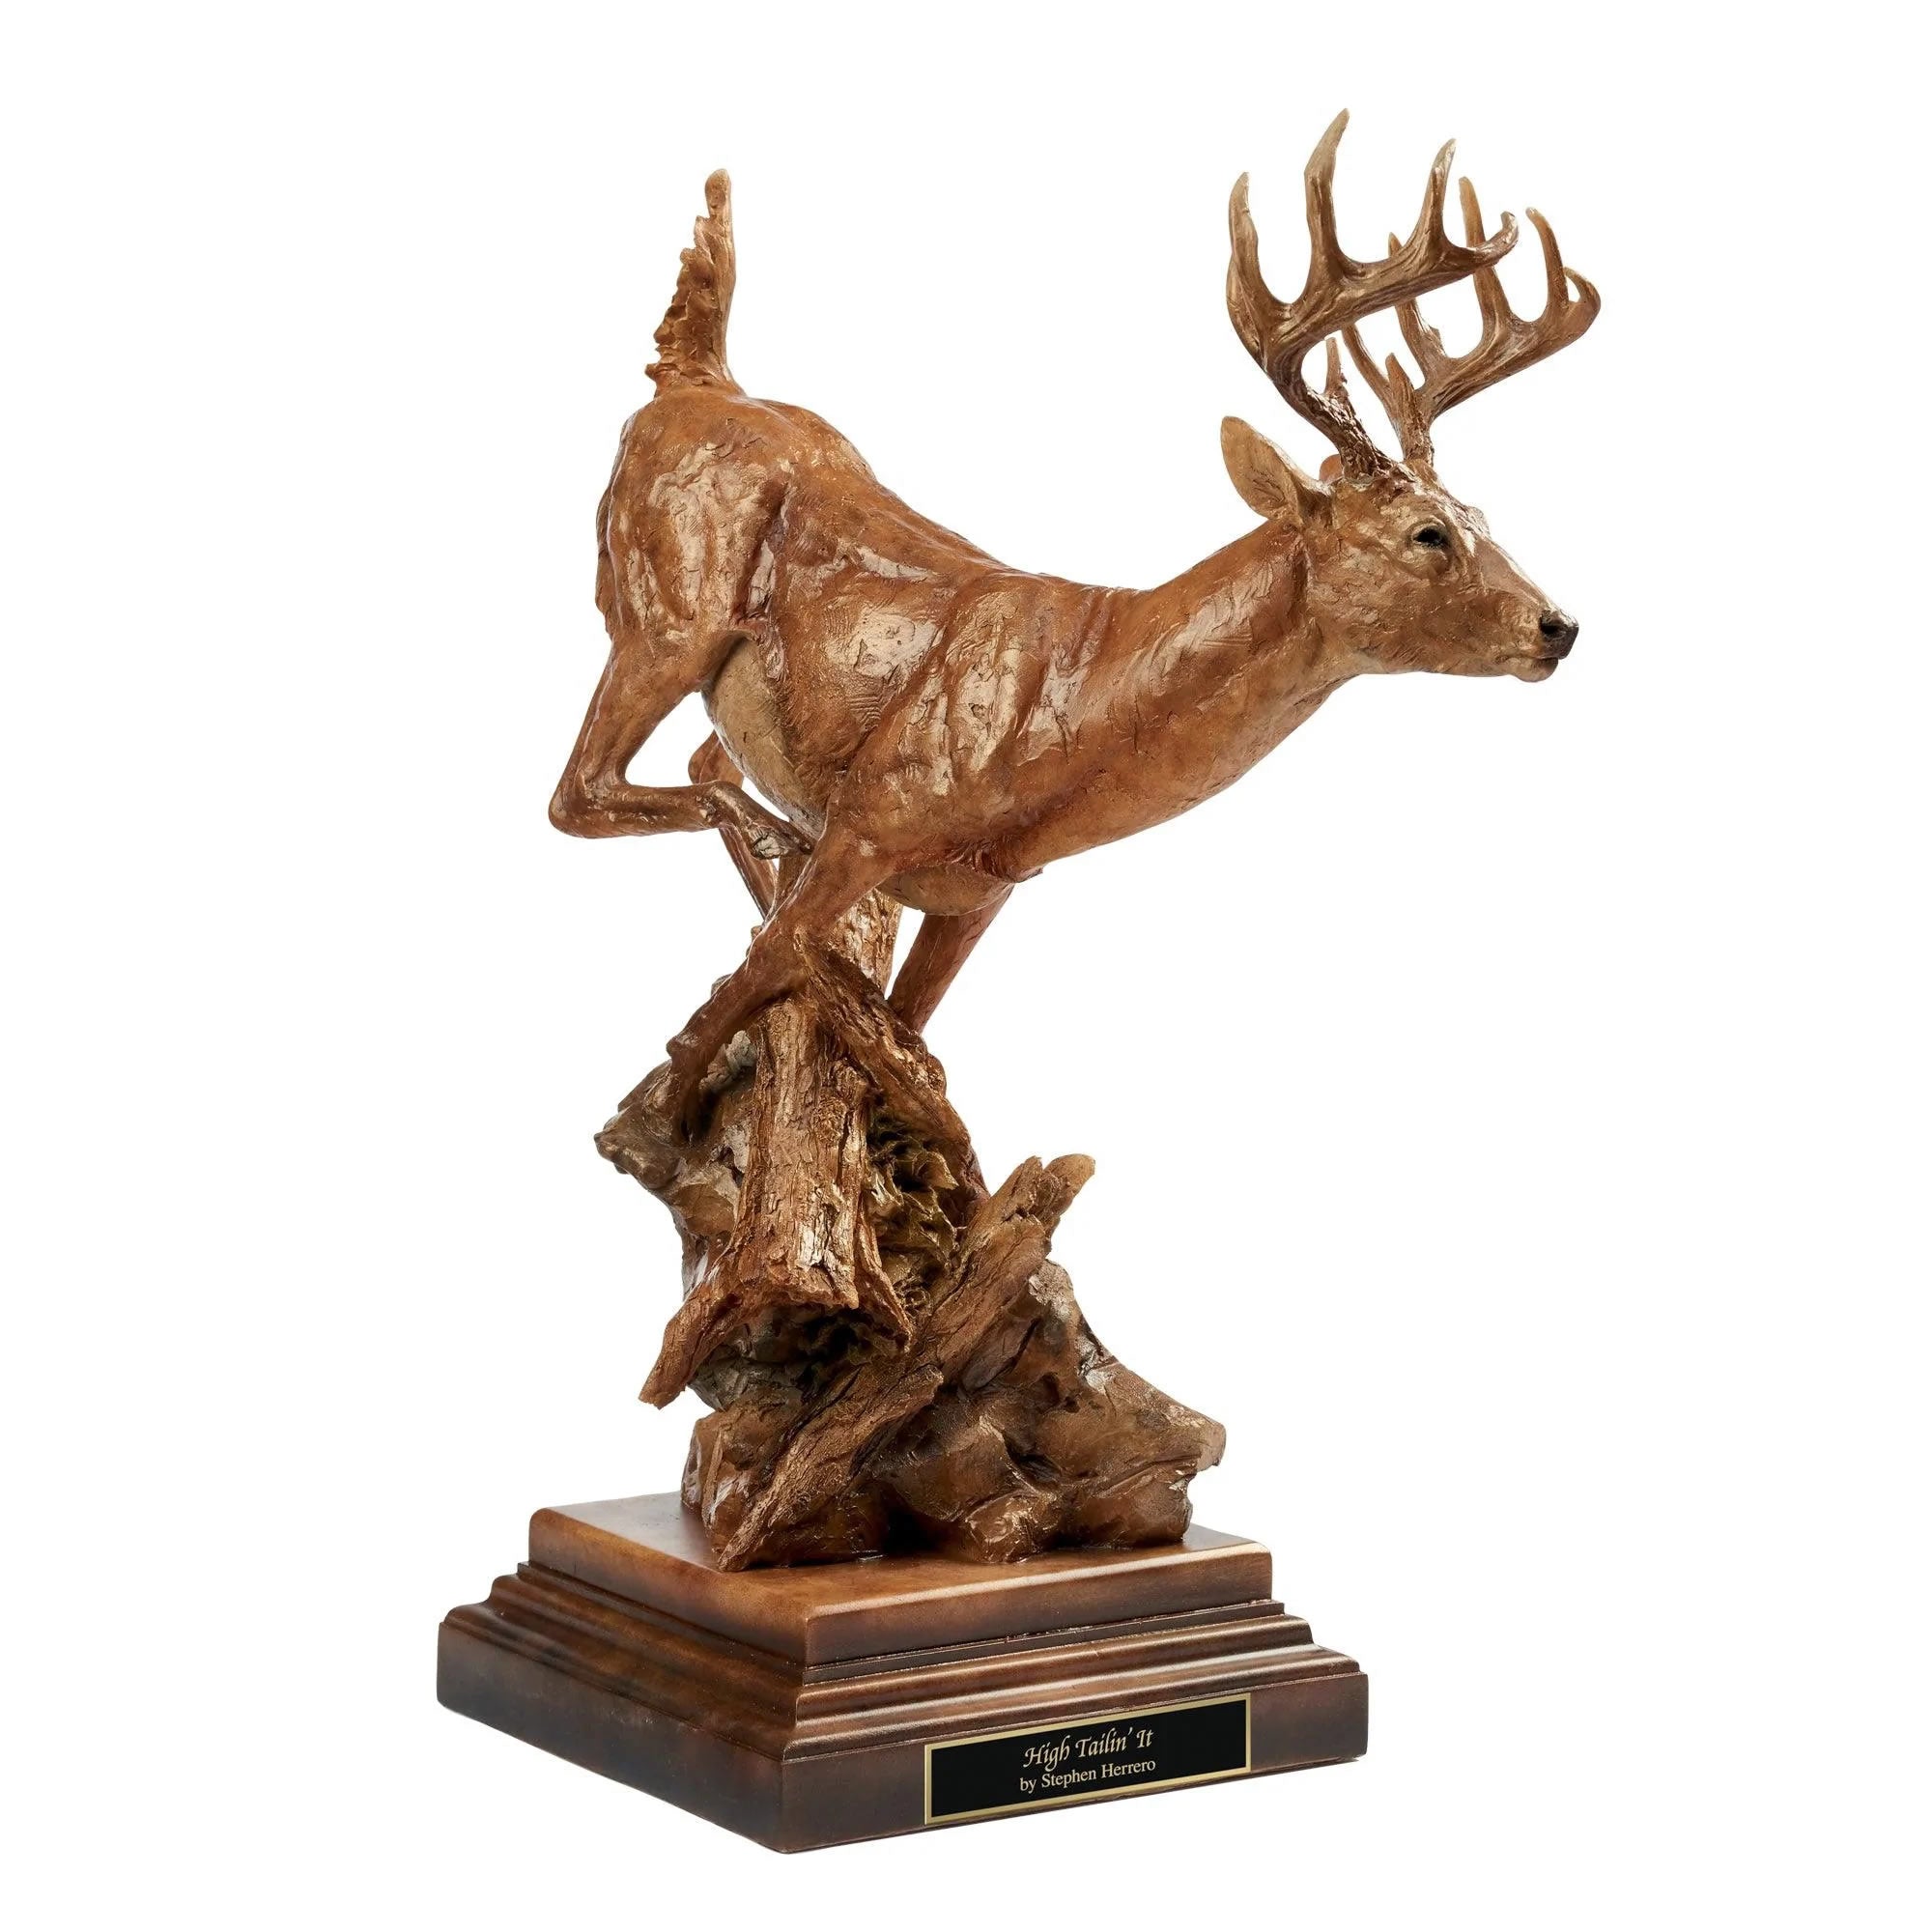 High Tailin' It - Whitetail Deer Sculpture